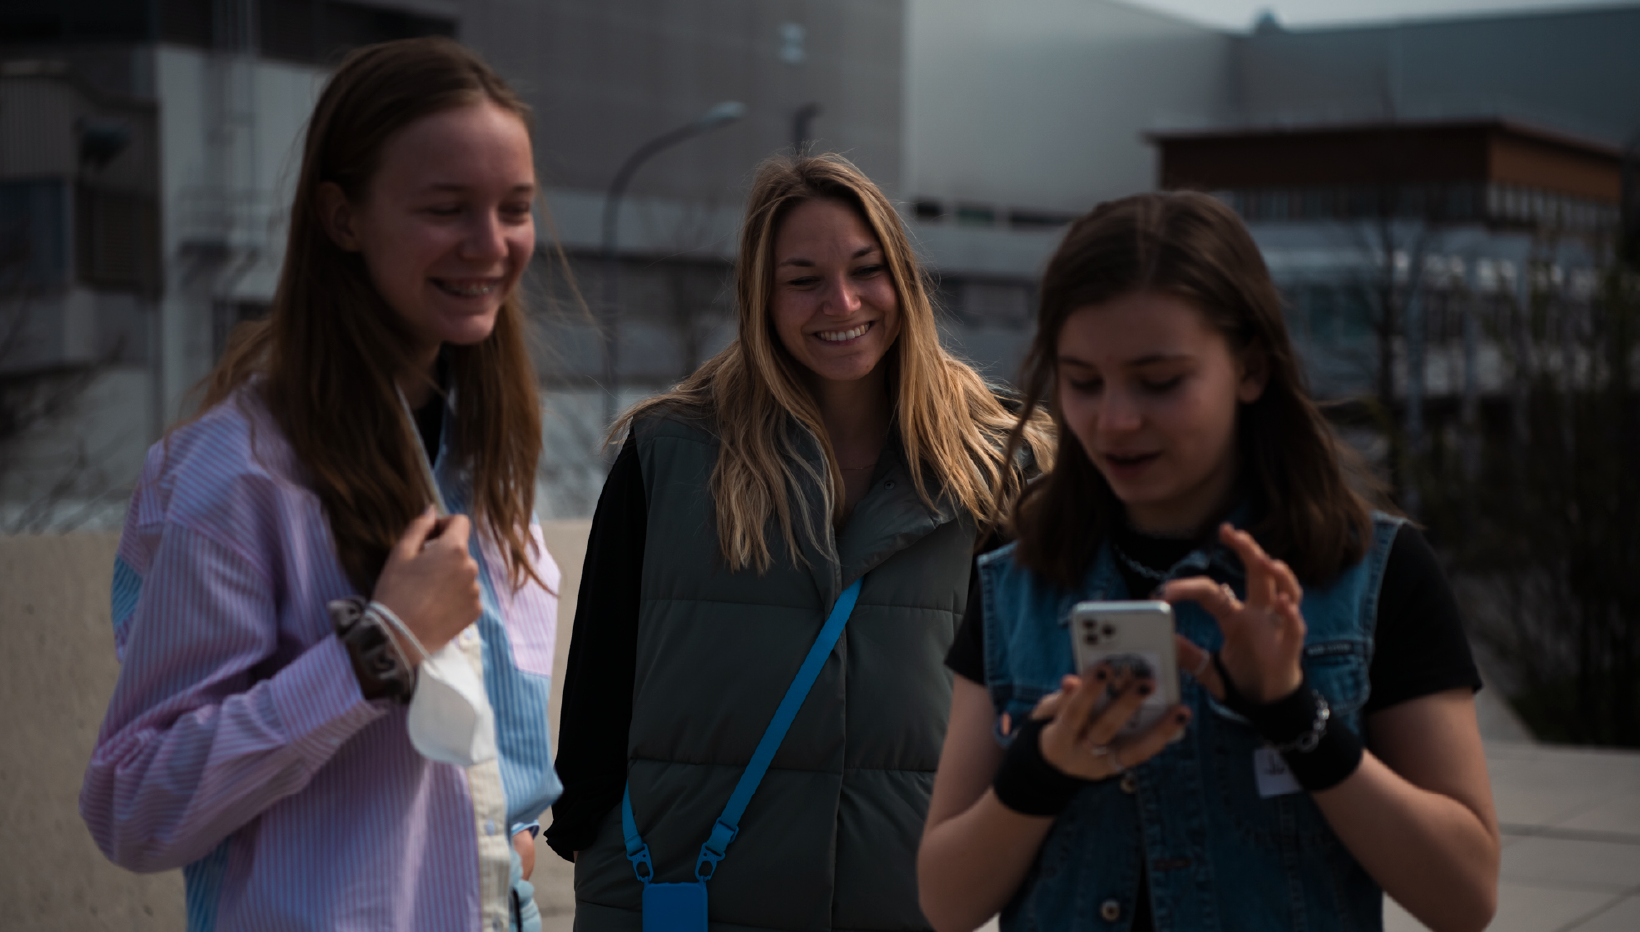 Drei lächelnde junge Frauen sehen auf ein Smartphone